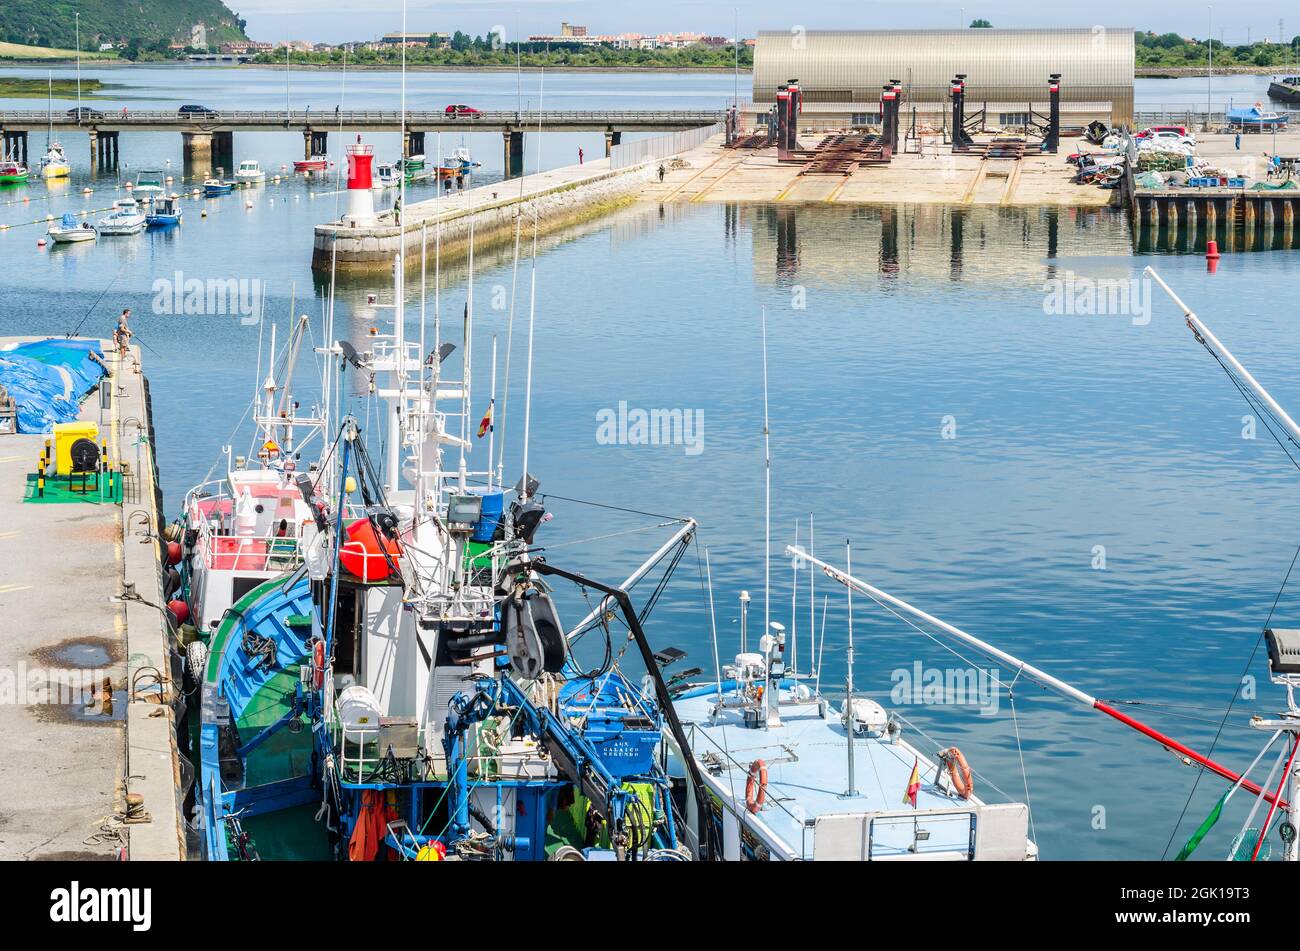 SANTONA, SPAGNA - 4 LUGLIO 2021: Vista di barche da pesca colorate nel porto di Santona, Cantabria, Spagna settentrionale, noto per le sue acciughe Foto Stock